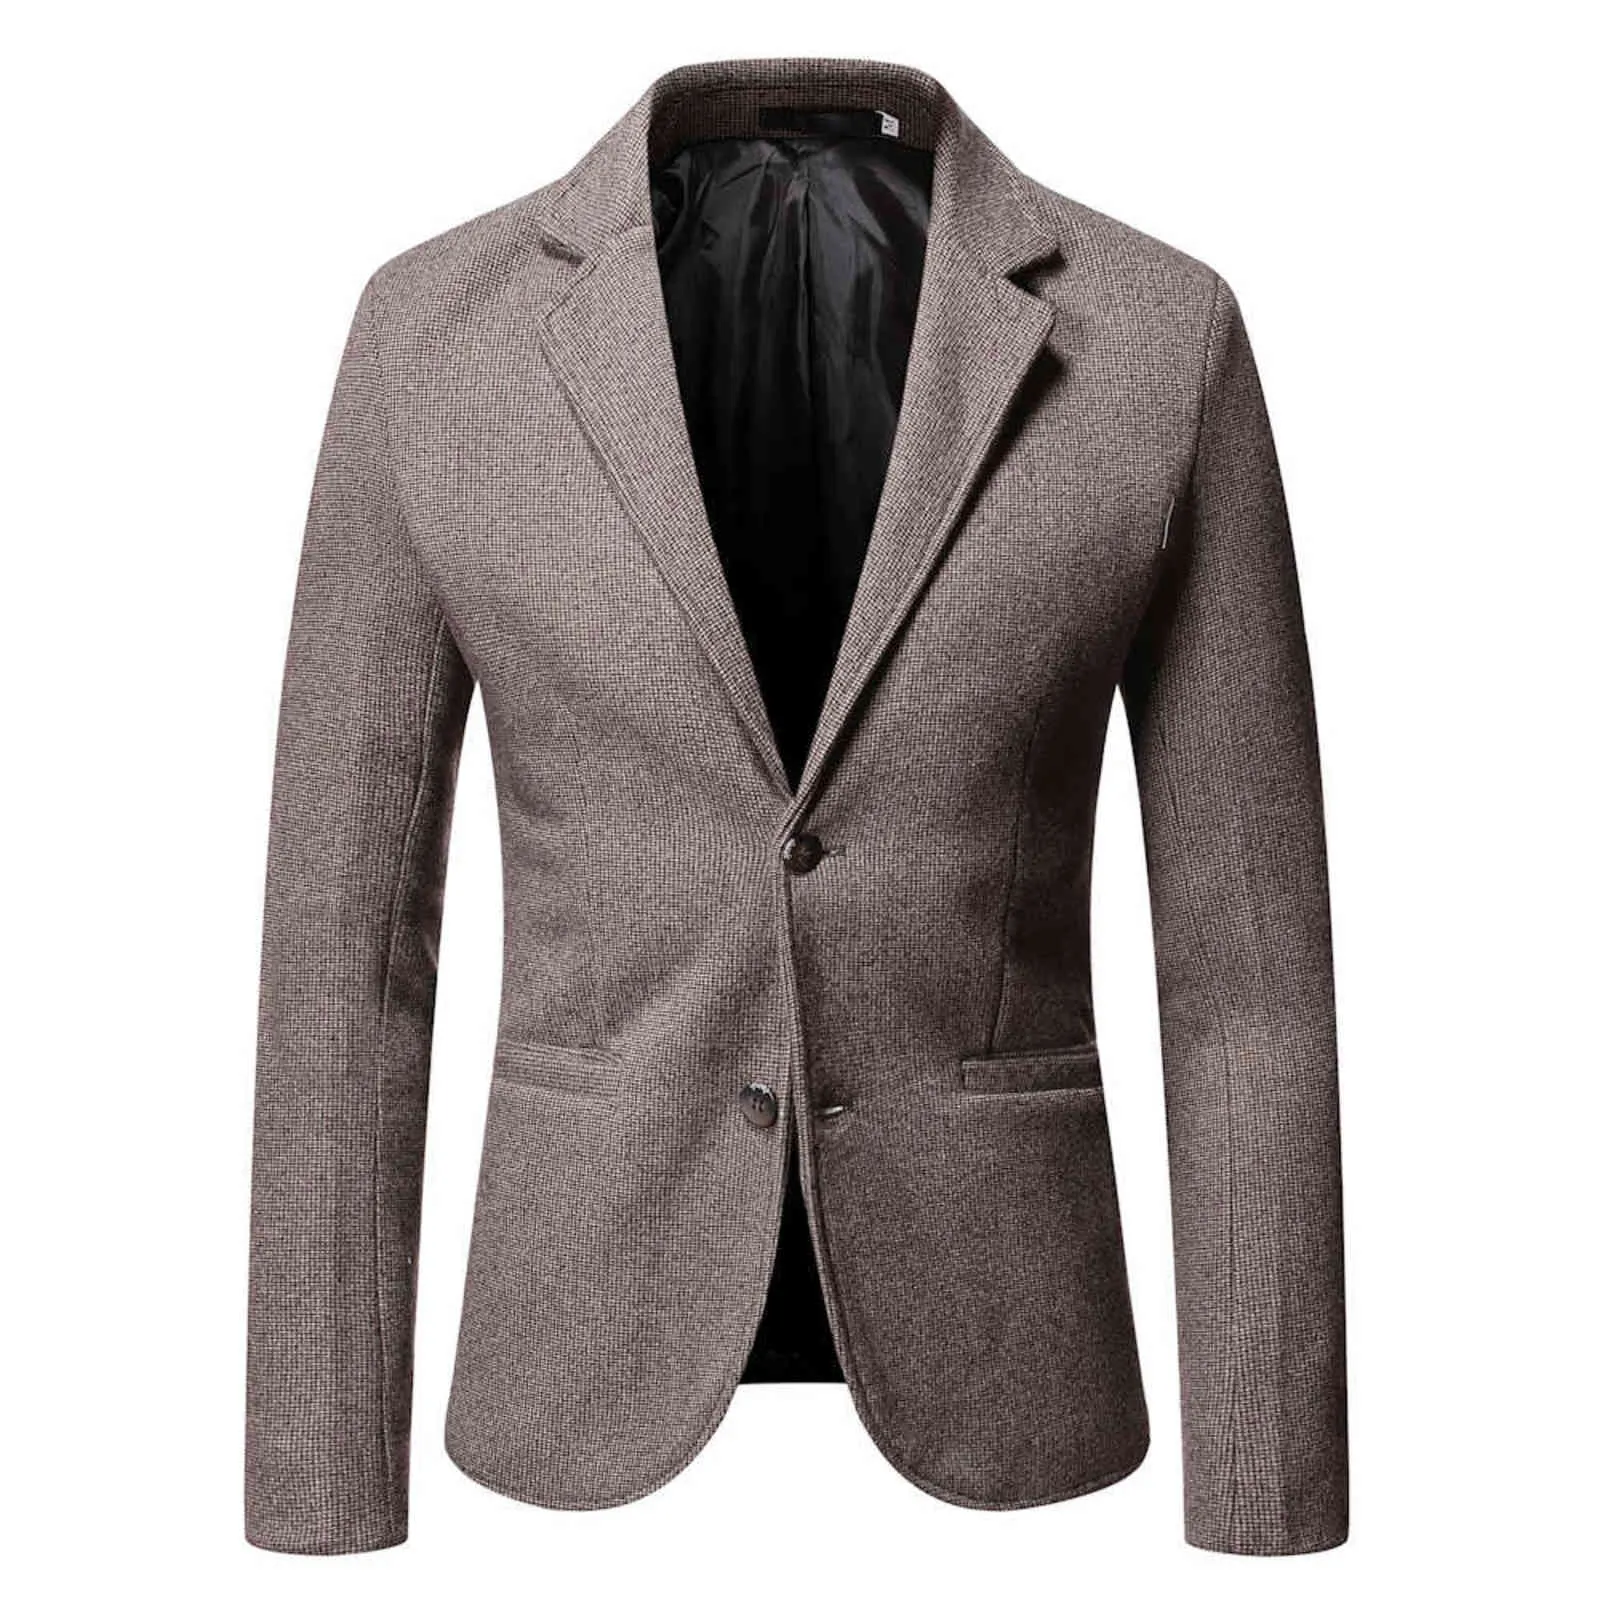 Осень / зима повседневная Blazers Classics -Selling маленький костюм клетки куртки высокого качества шерстяная ткань теплый костюм мужской тонкий подходящий 5xL 211120